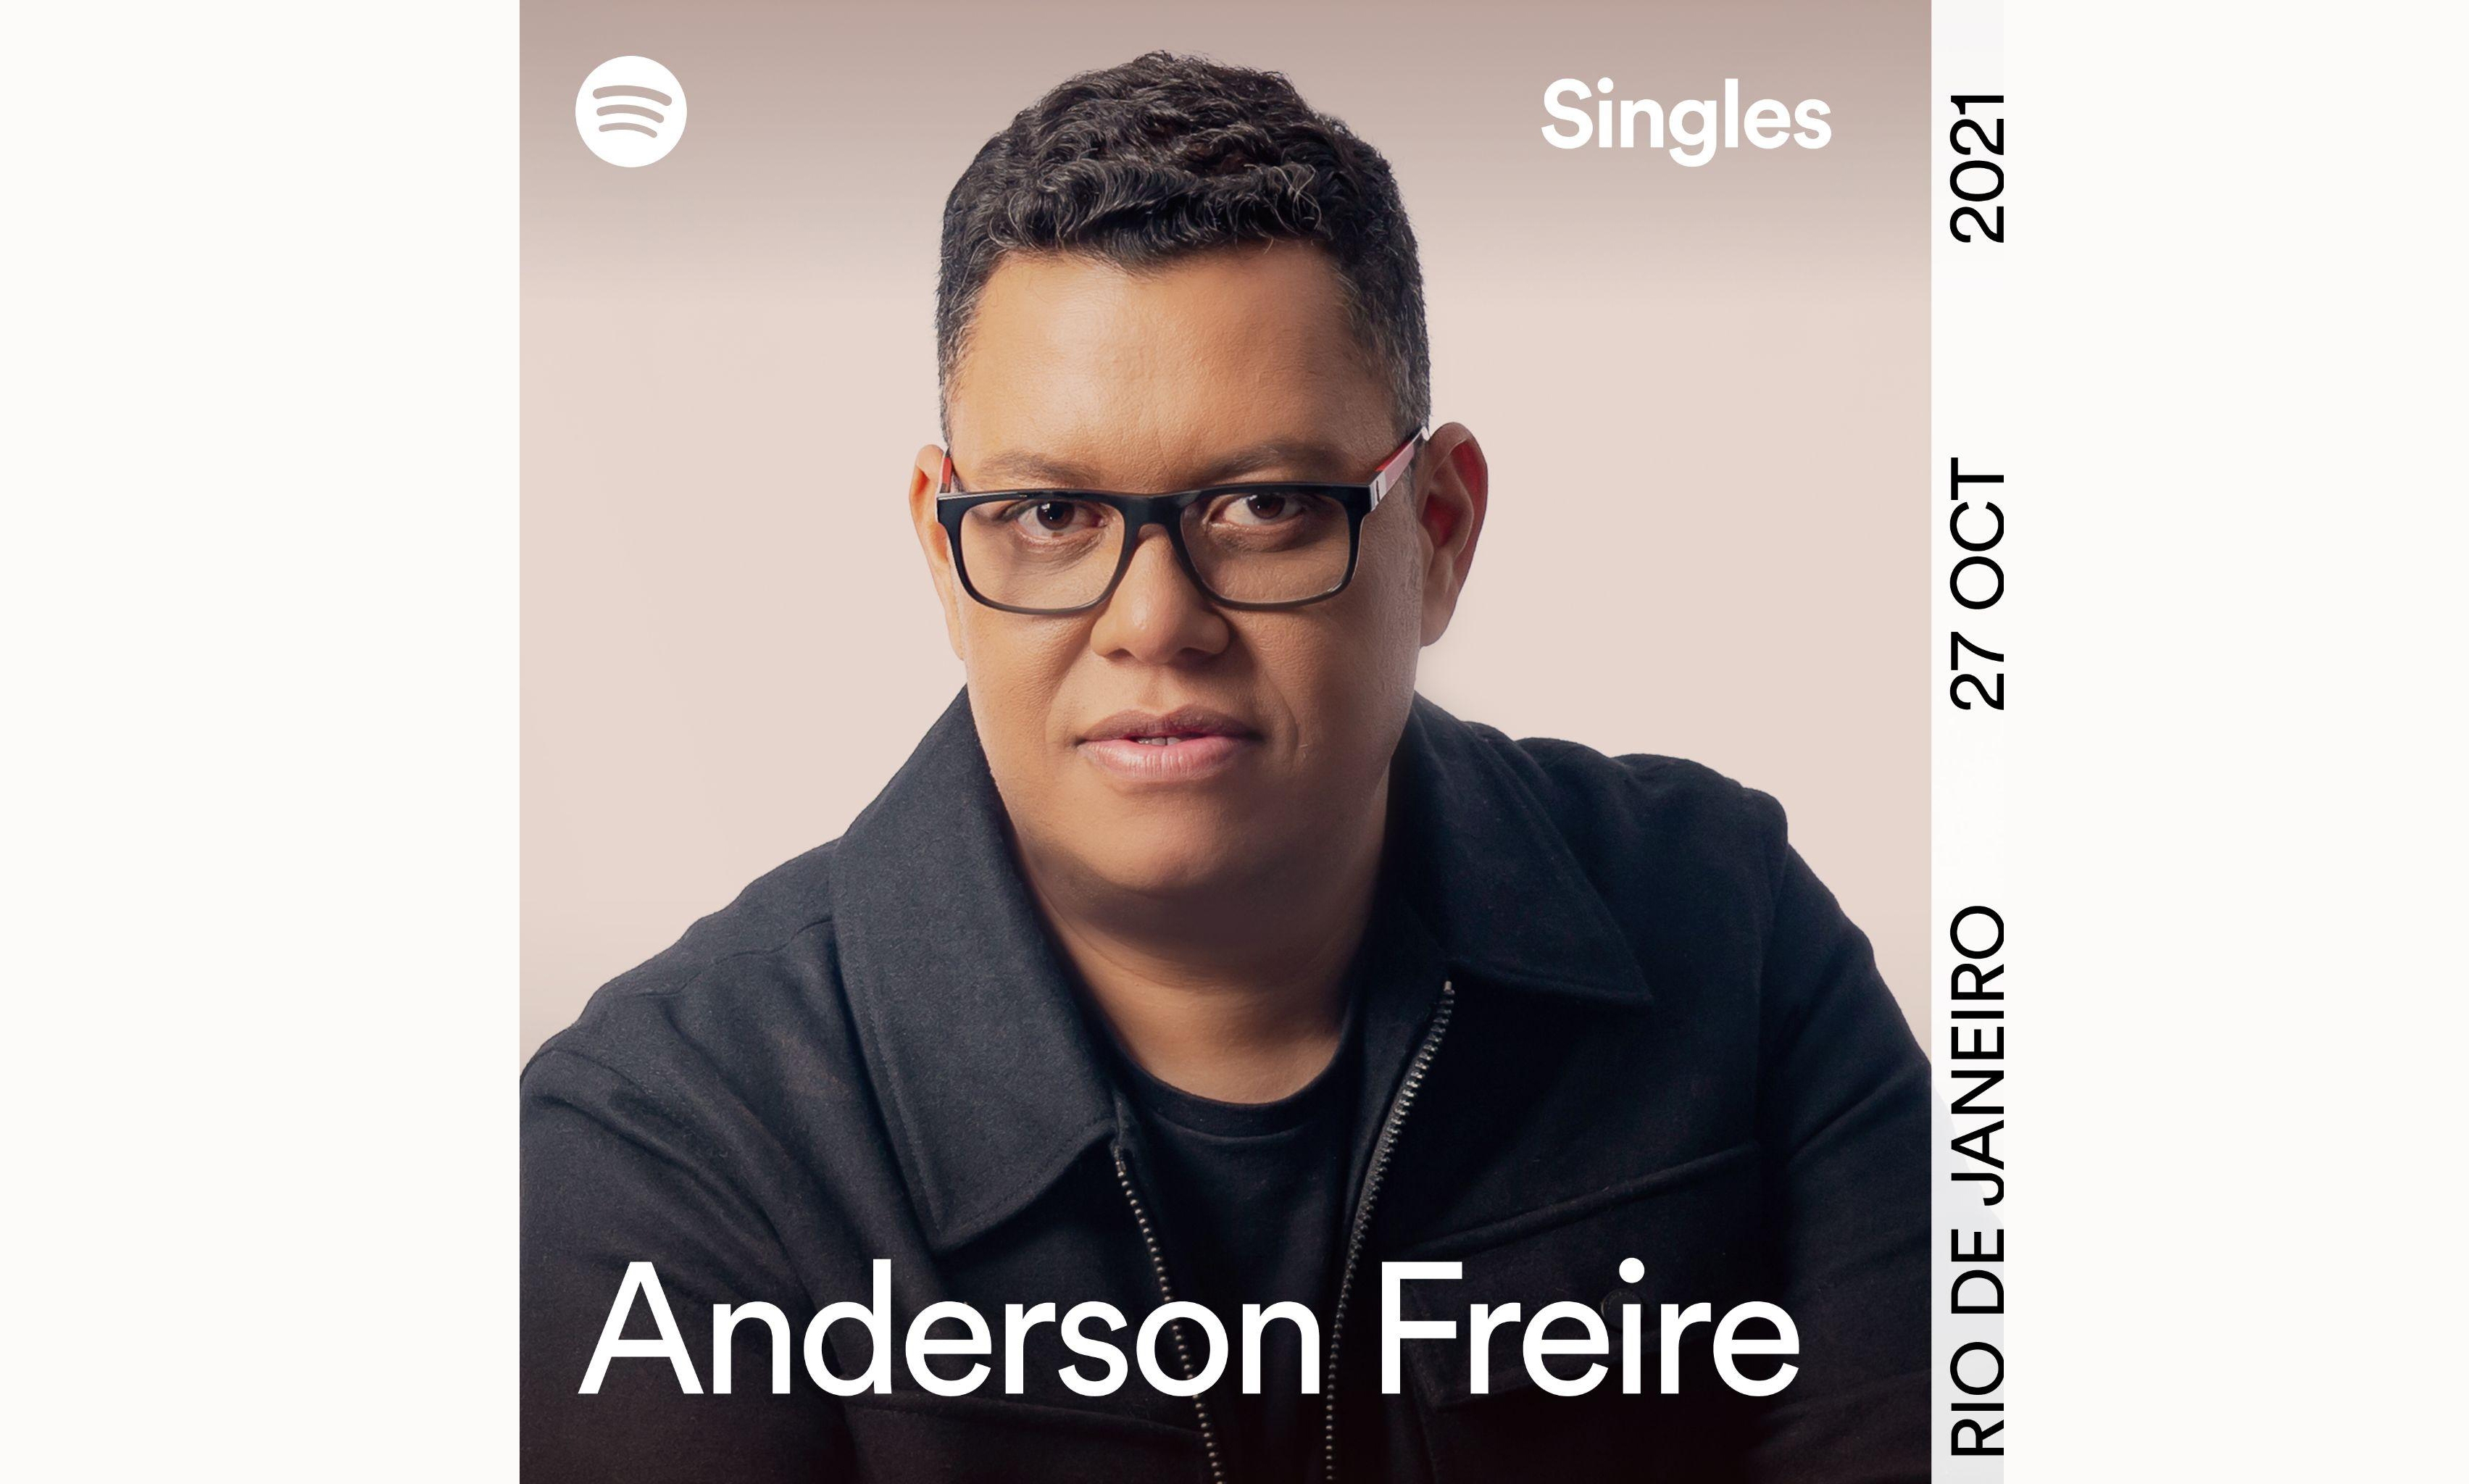 Anderson Freire é o primeiro cantor gospel a gravar Spotify Singles no Brasil